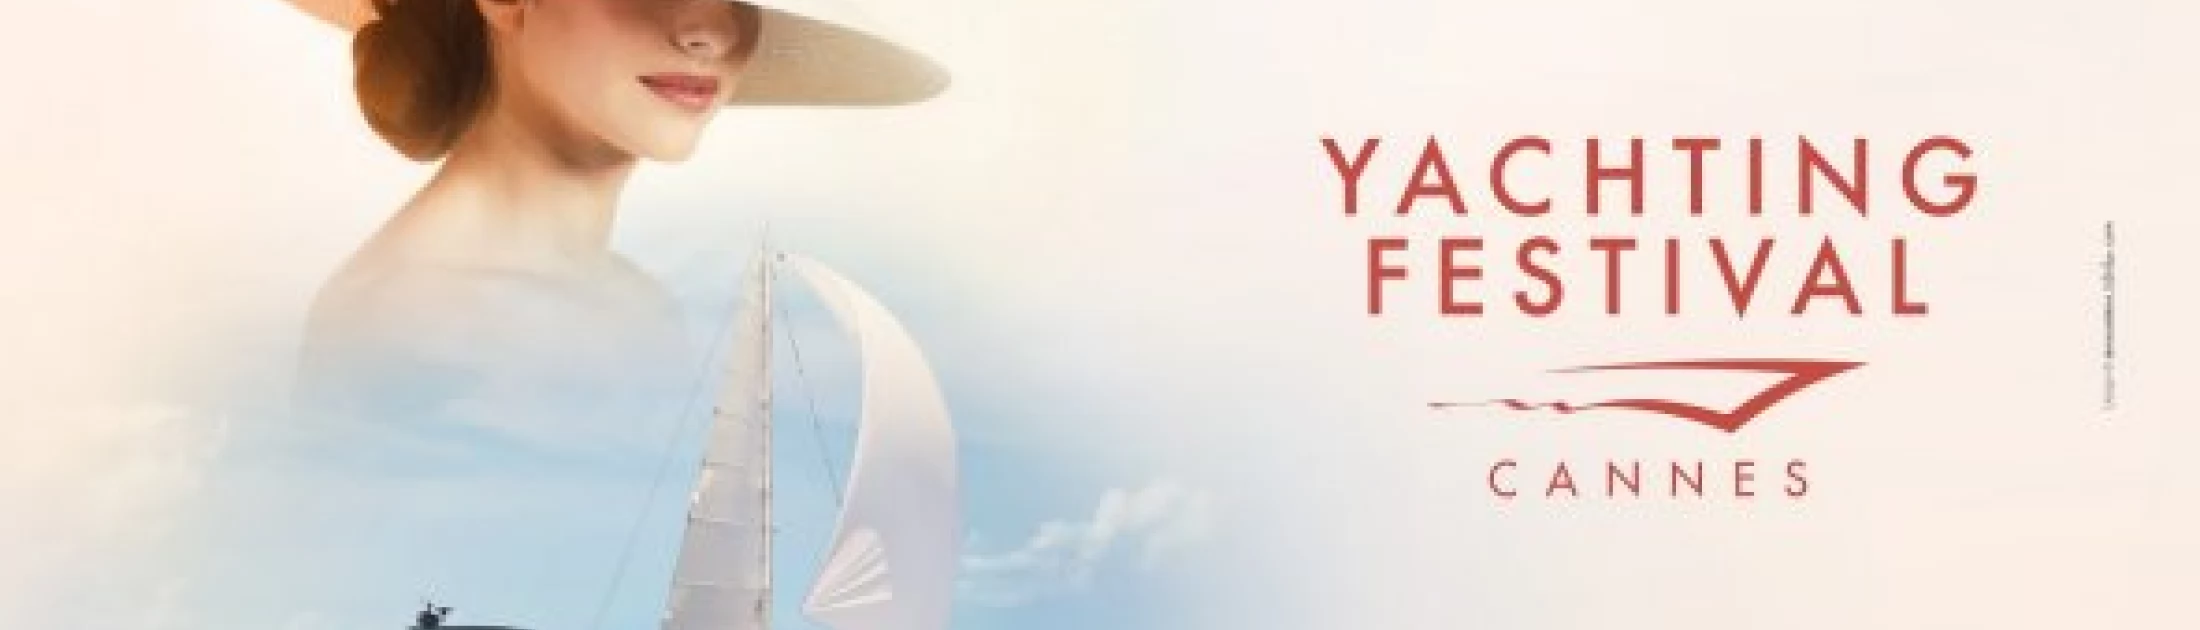 Yachting Festival de Cannes 2021 : Axopar, Brabus Marine et Boston Whaler à découvrir du 7 au 12 septembre